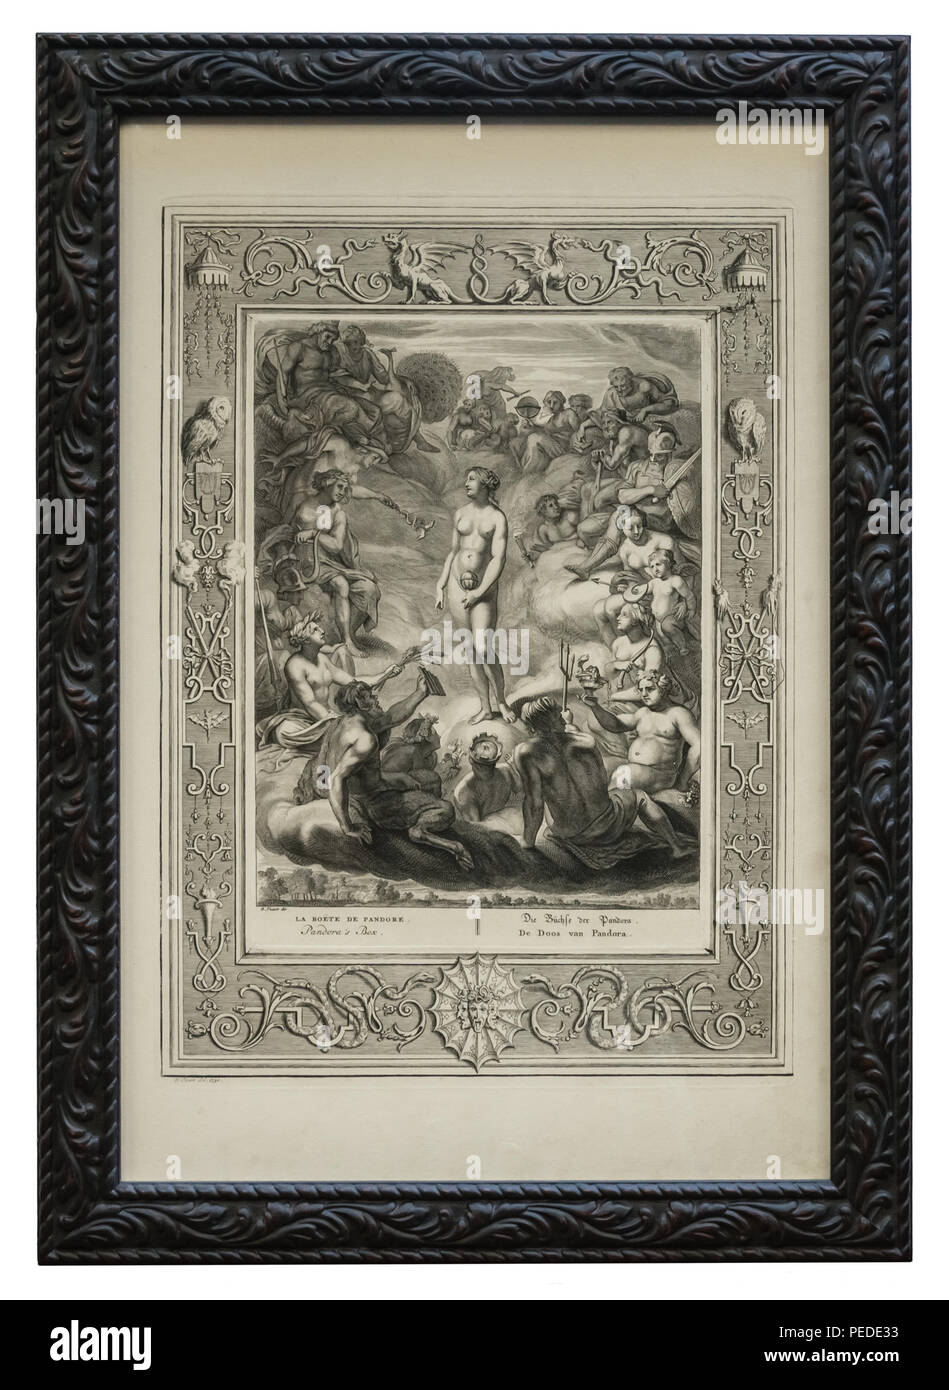 Antiker Kupferstich - Griechische Sage - Die Büchse der Pandora - mit schwarzem Bilderrahmen, der mit stilisierten Blätterranken verziert ist Foto Stock